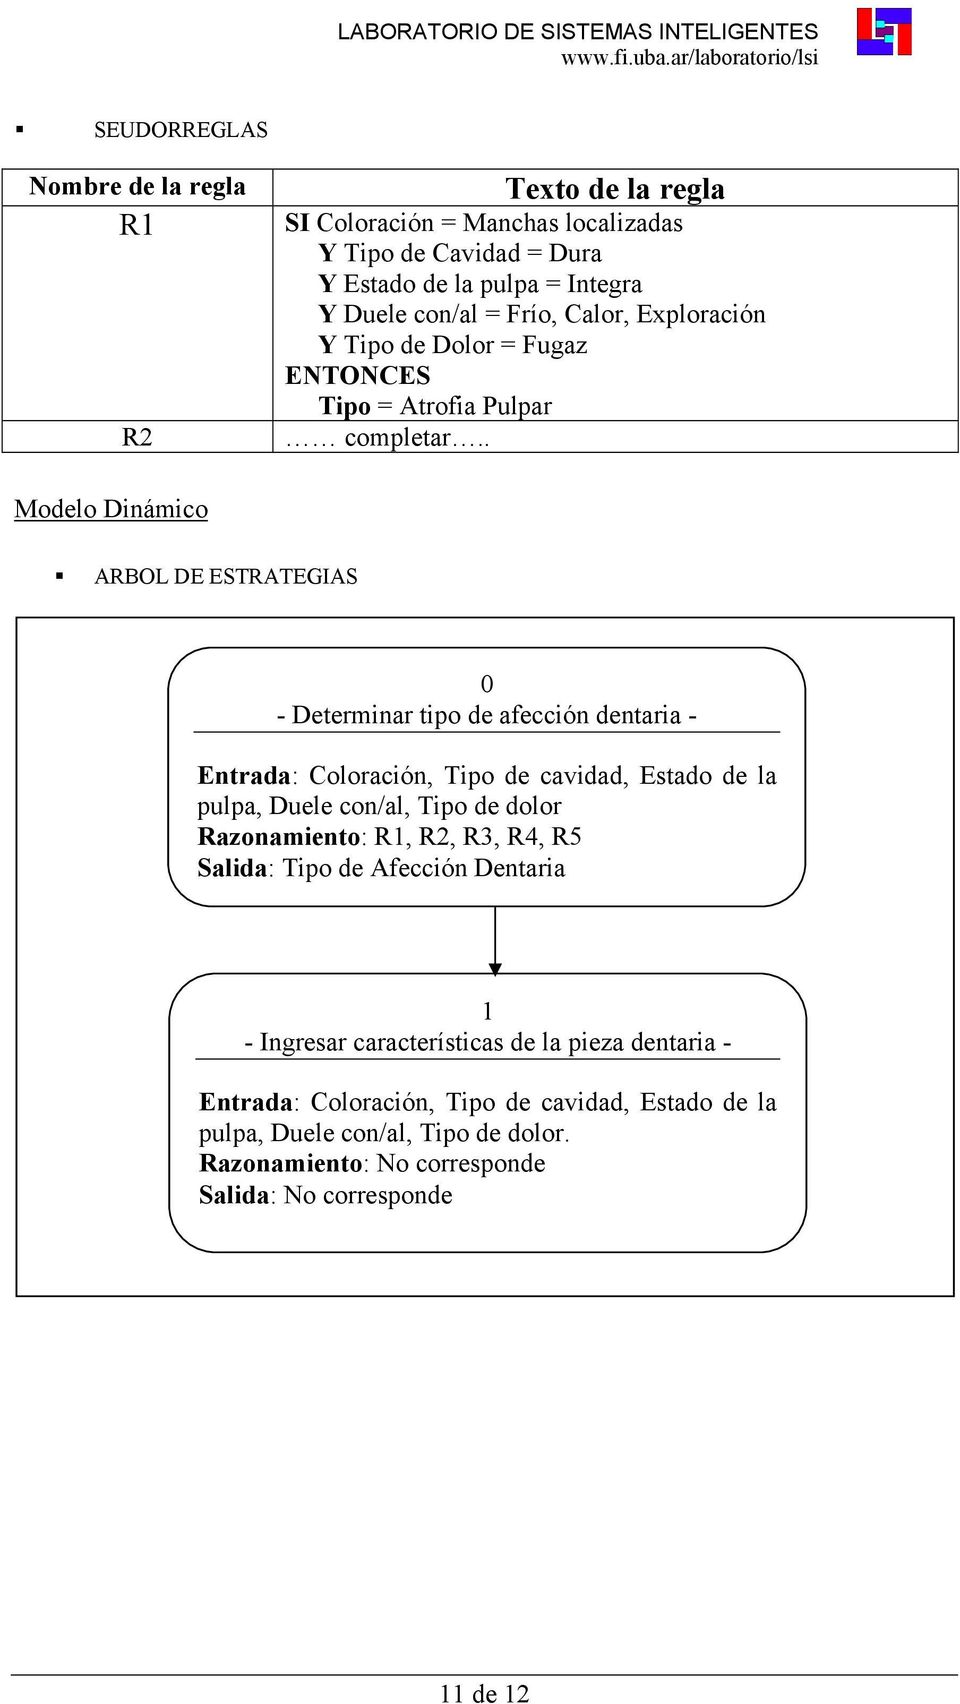 . Modelo Dinámico ARBOL DE ESTRATEGIAS 0 - Determinar tipo de afección dentaria - Entrada: Coloración, Tipo de cavidad, Estado de la pulpa, Duele con/al, Tipo de dolor